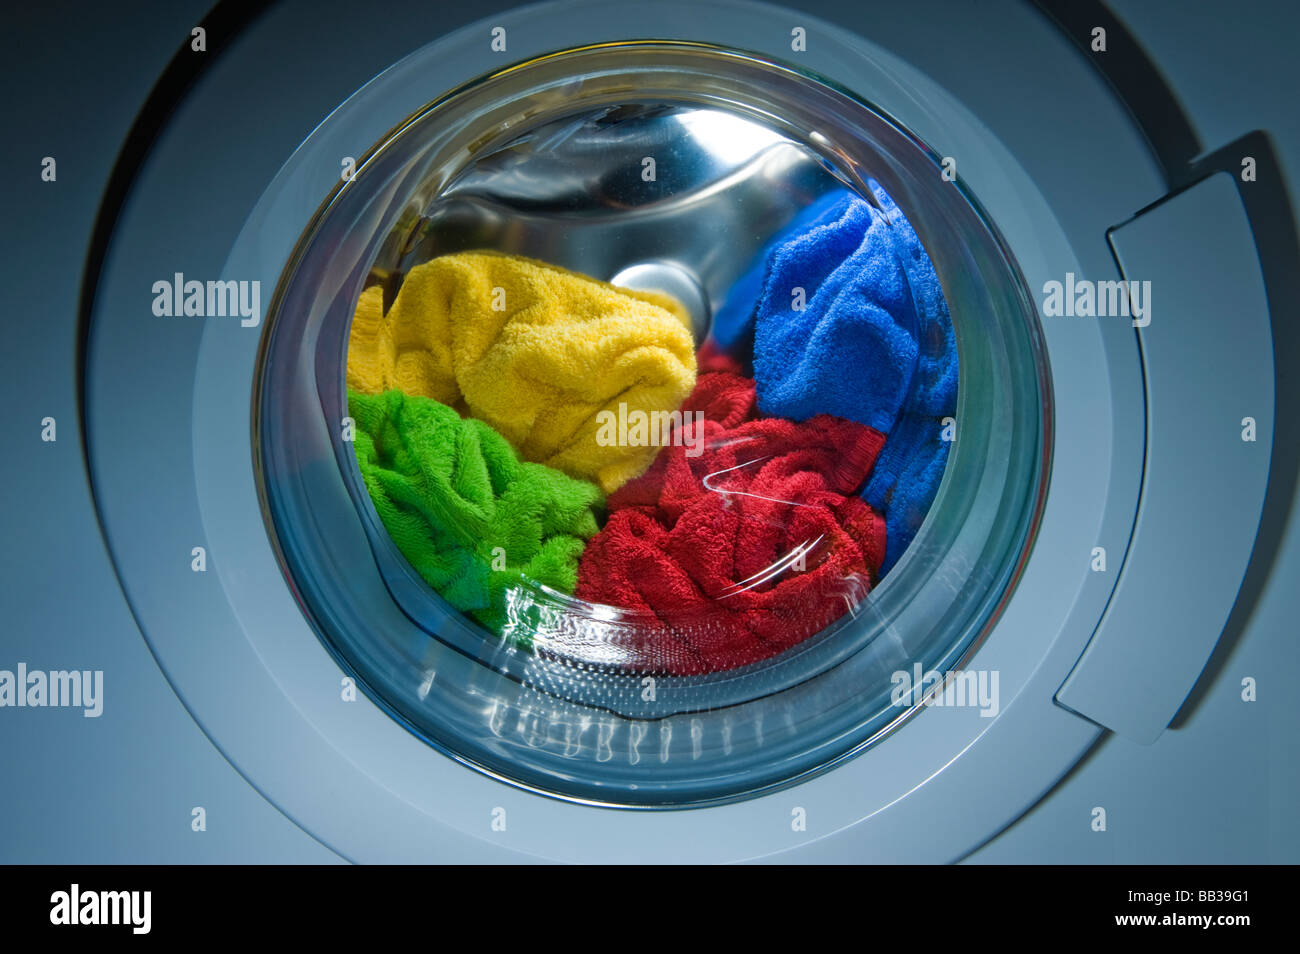 Wäscherei Waschmaschine Waschgang reinigen Reiniger tragen Kleider casual Frottee, Frottee innen Farbe Farbe rot gelb grün Stockfoto